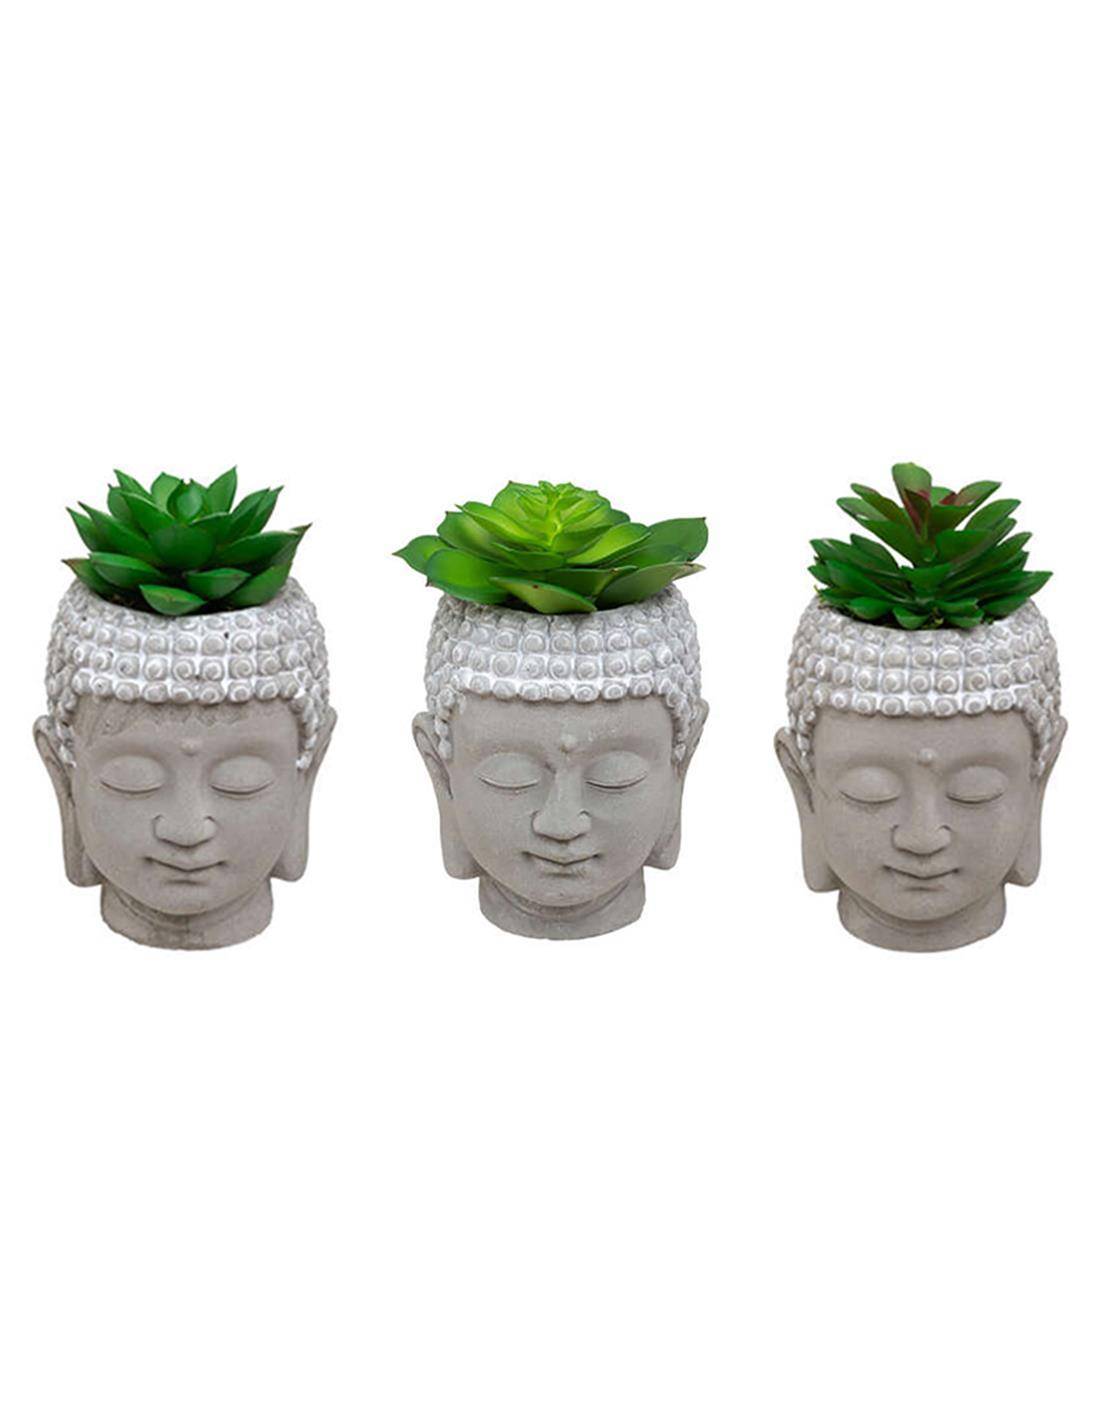 Βούδας κεφάλι  κεραμ.με πρασινάδα 9Χ12,5, 3σχ.